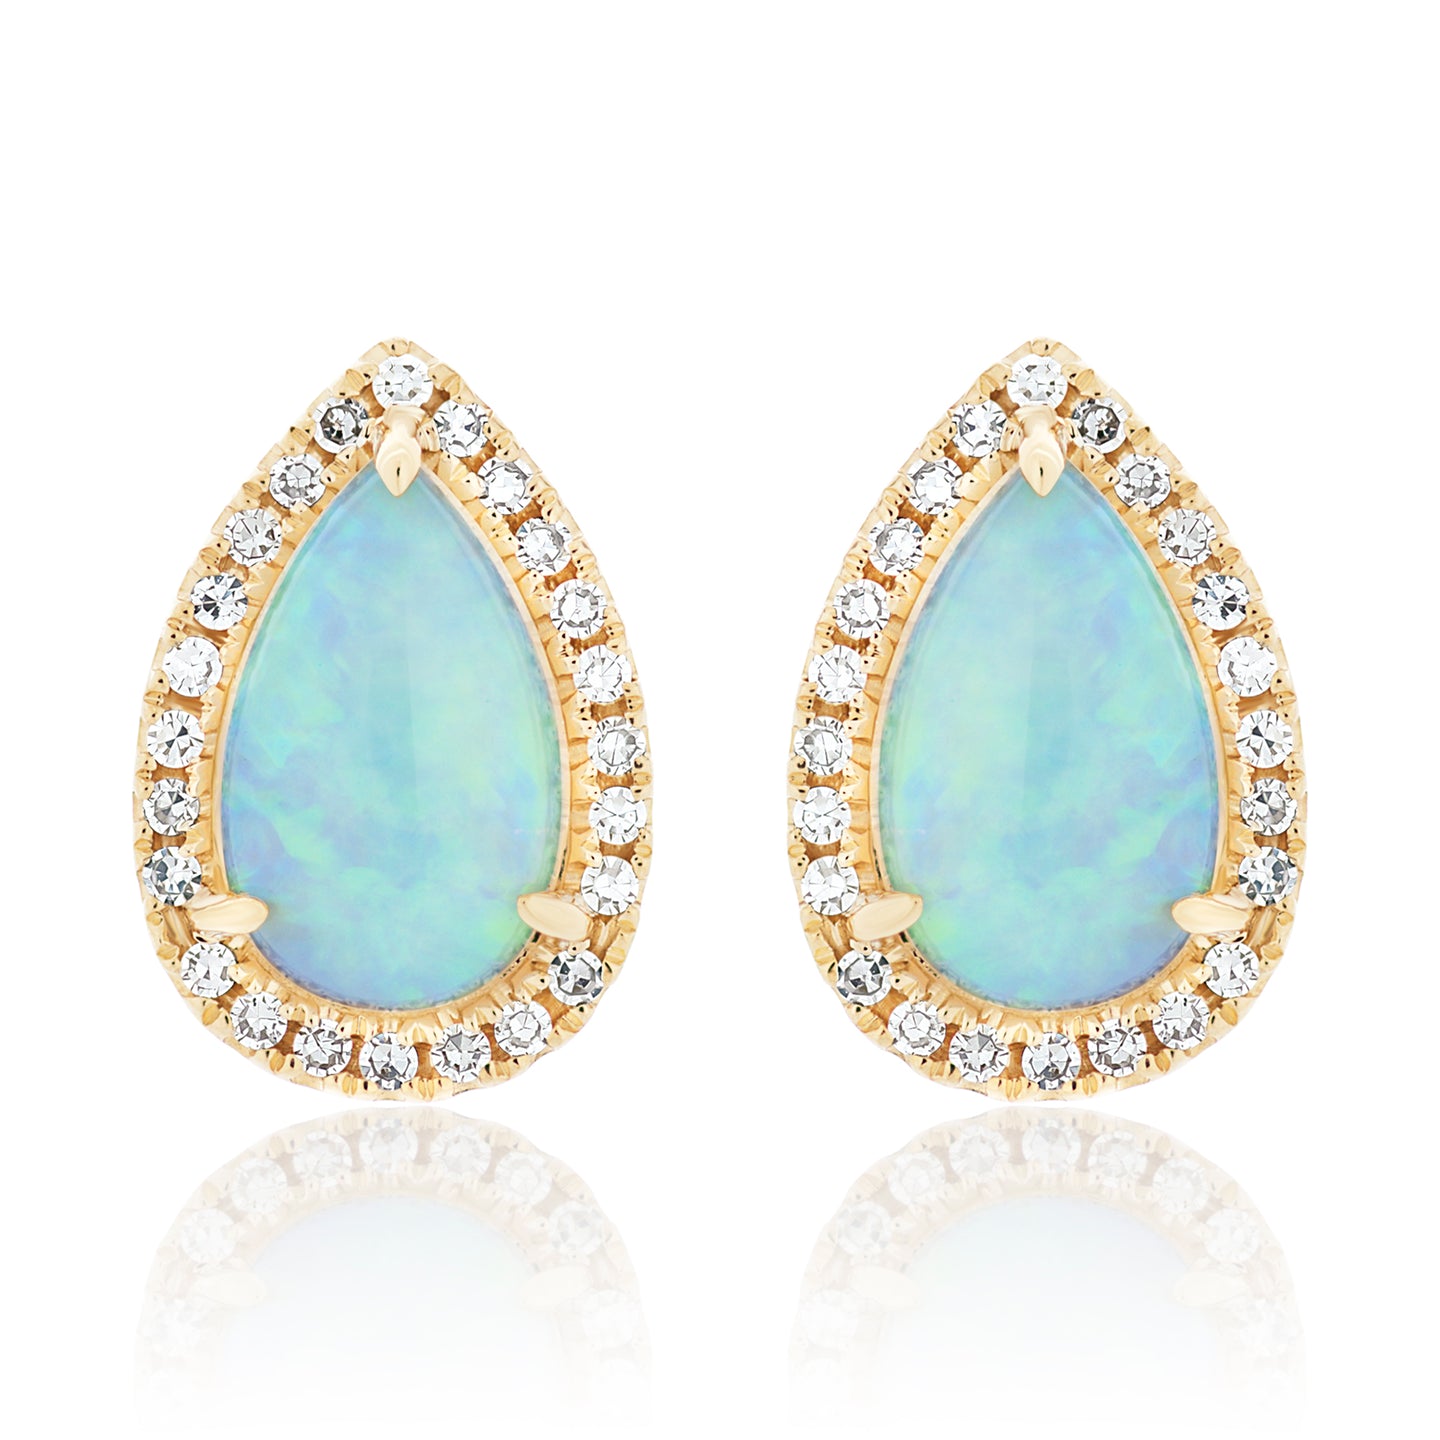 Tear Drop Opal and Diamond Stud Earrings